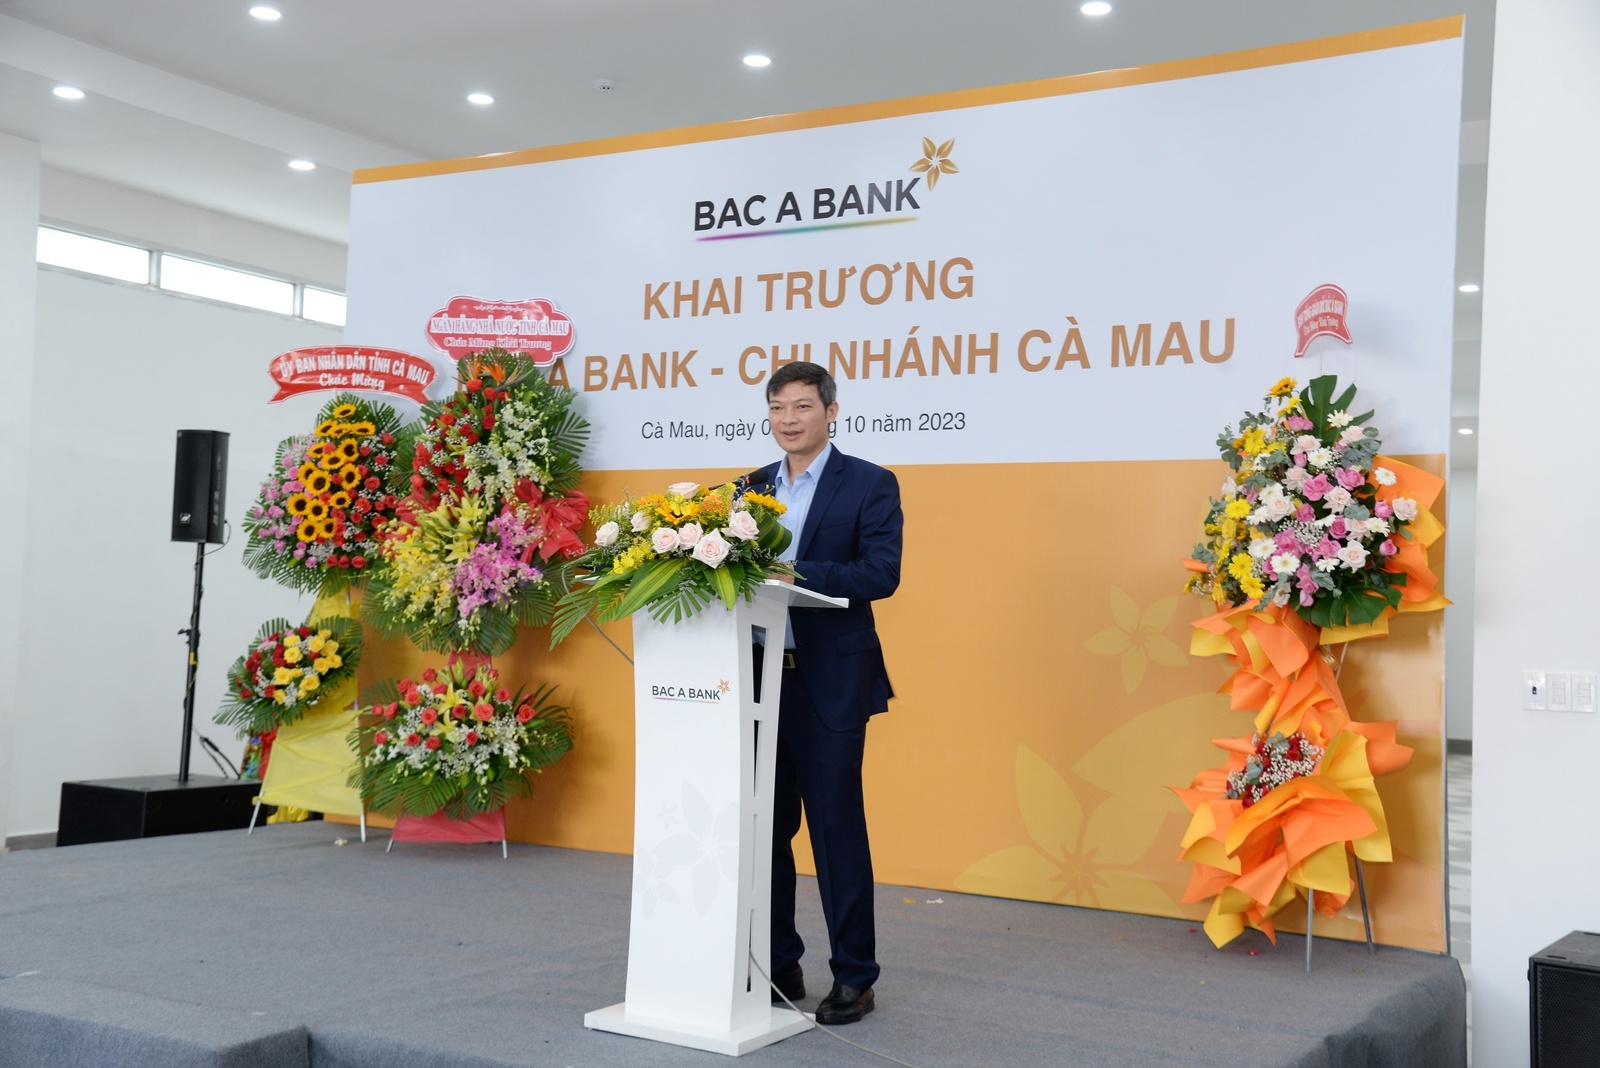 Ông Nguyễn Việt Hanh, Phó Tổng Giám đốc BAC A BANK phát biểu khai mạc